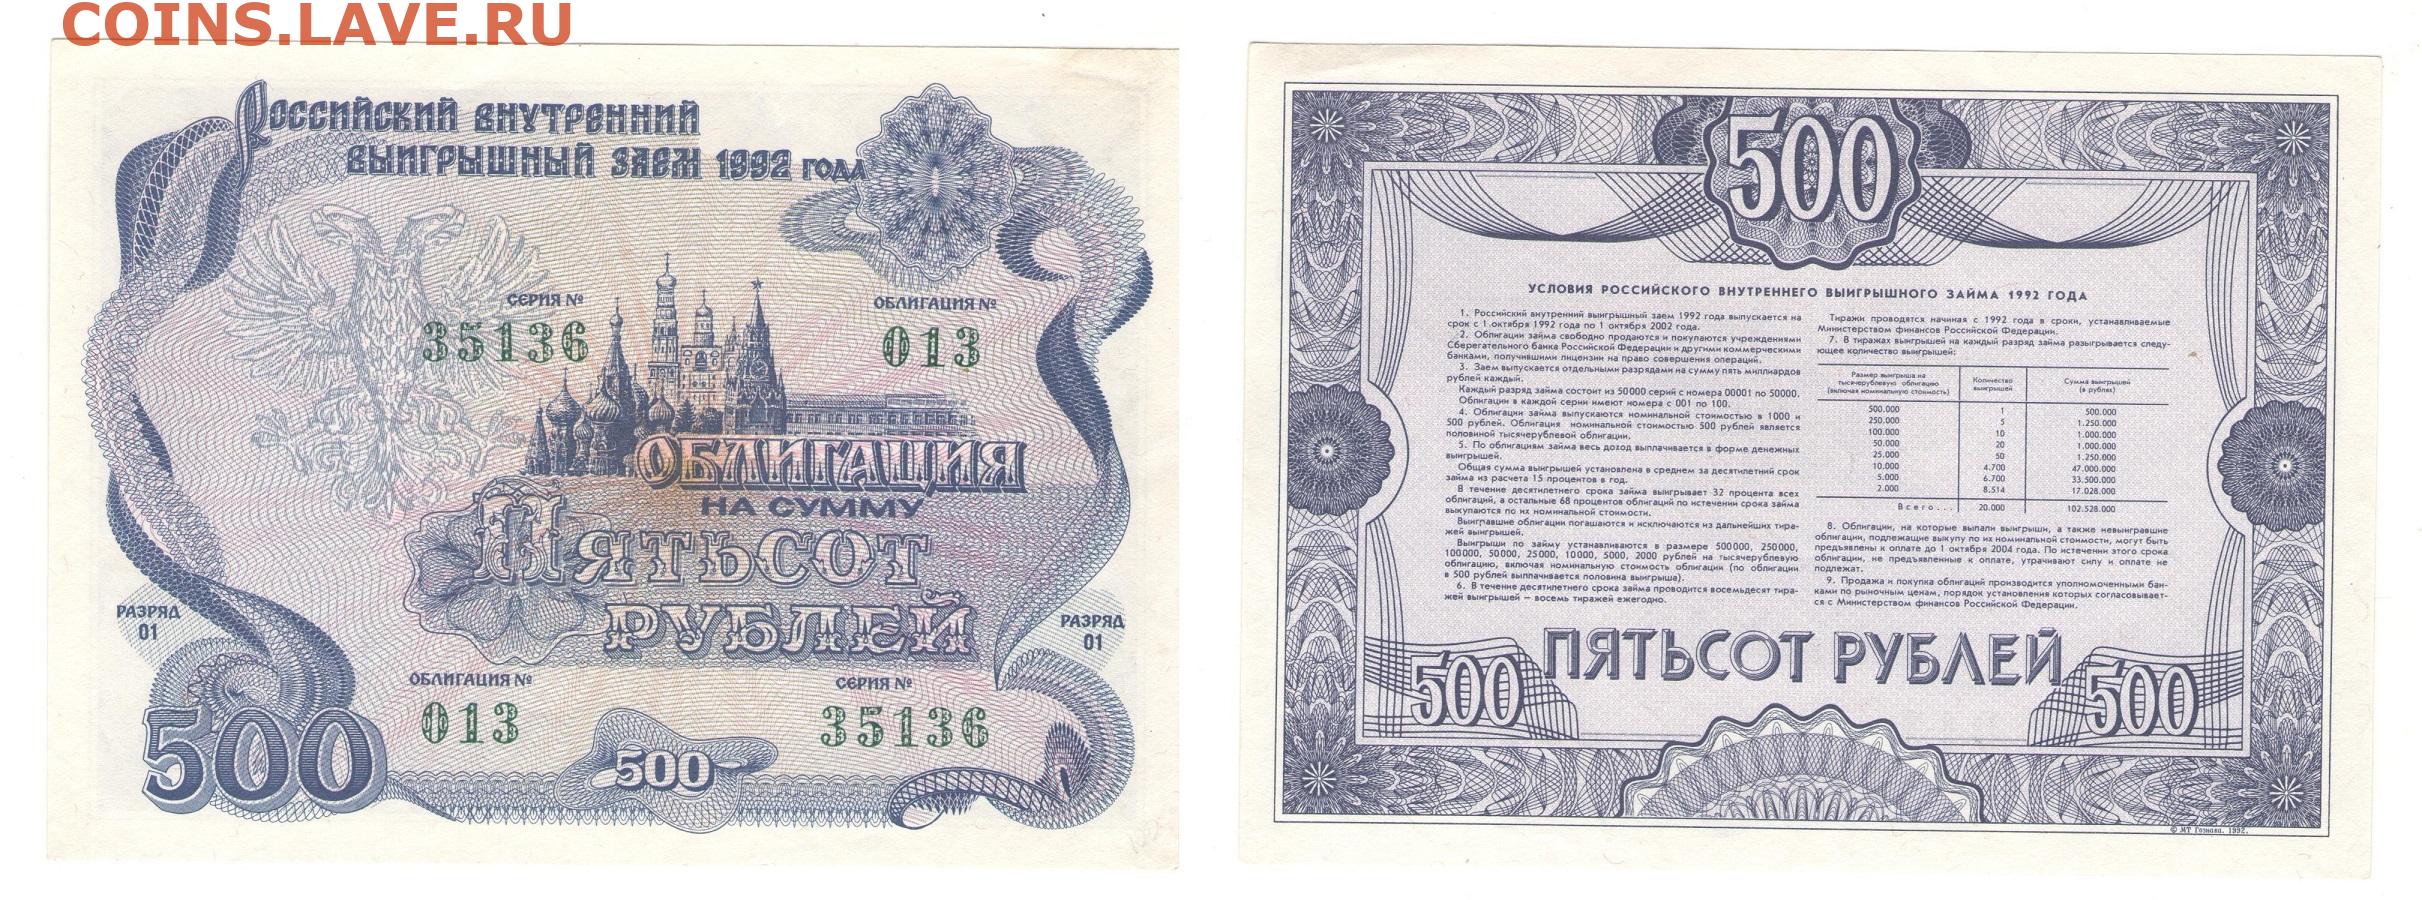 Ценная бумага 1992. 1000 1992 Года. Облигации 1000 р. Ценные бумаги 1992. Облигация 1 рубль 1992 года.